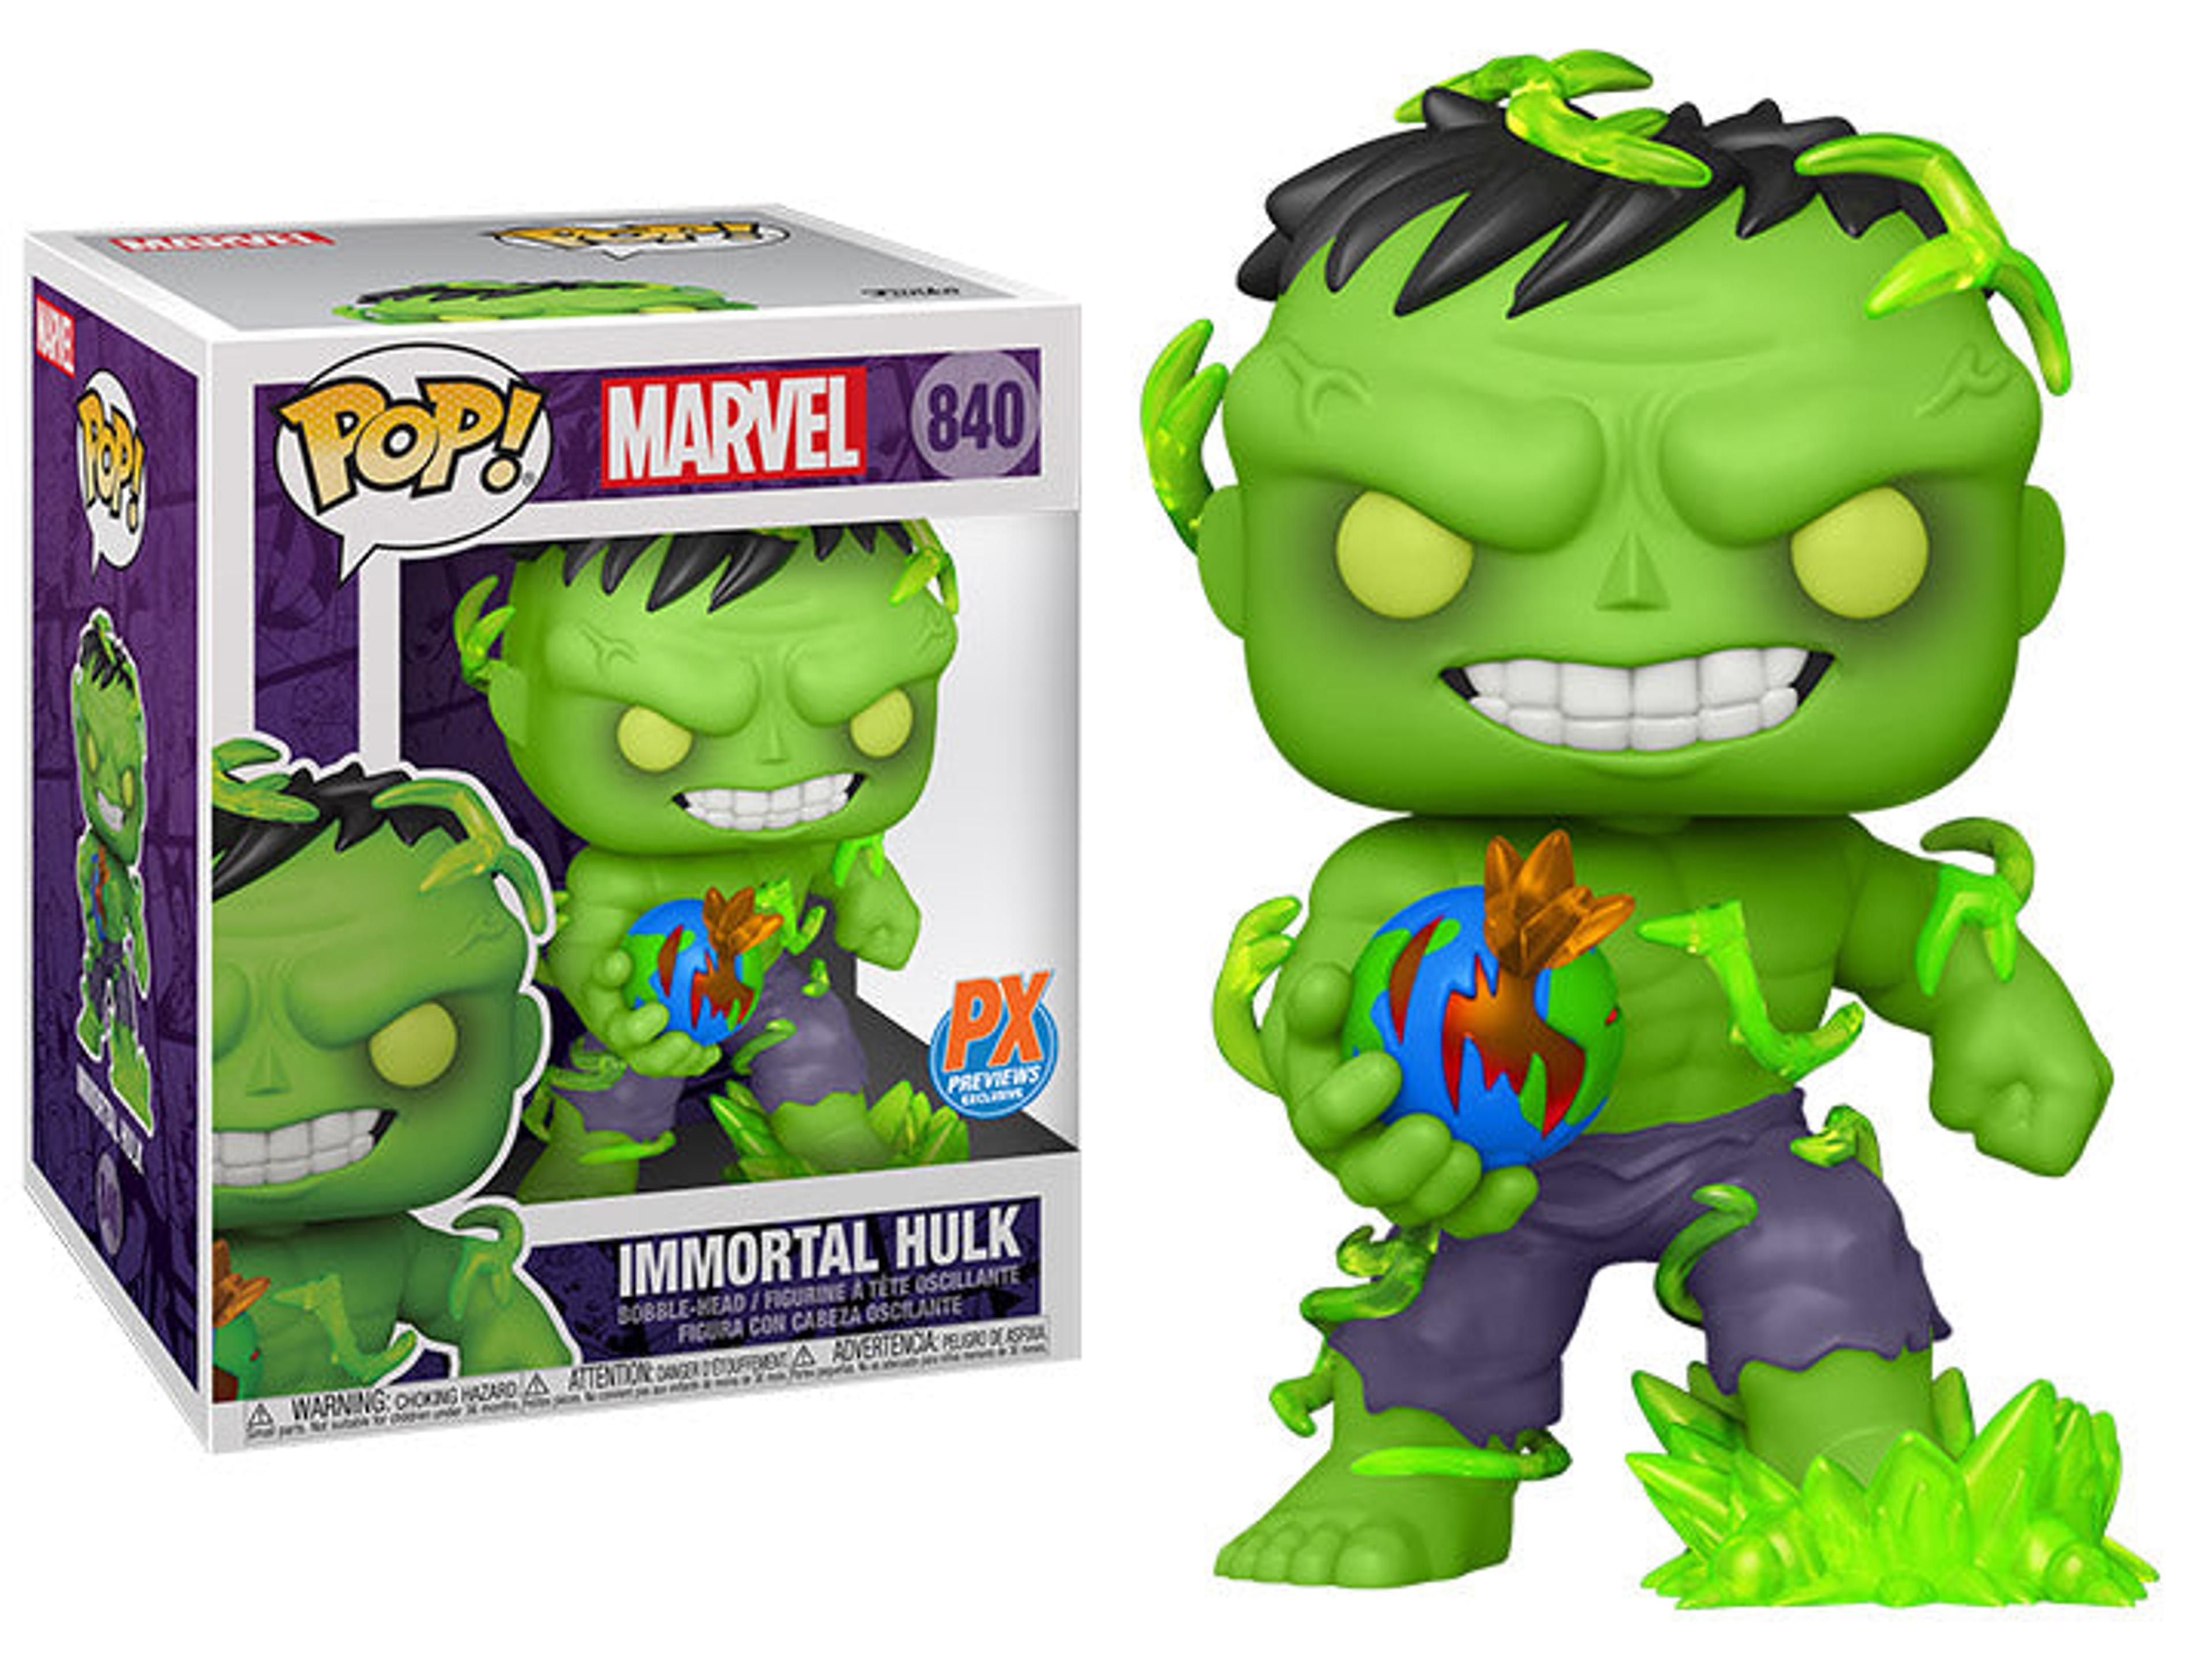 Funko Pop! Marvel Immortal Hulk 6" PX Exclusive